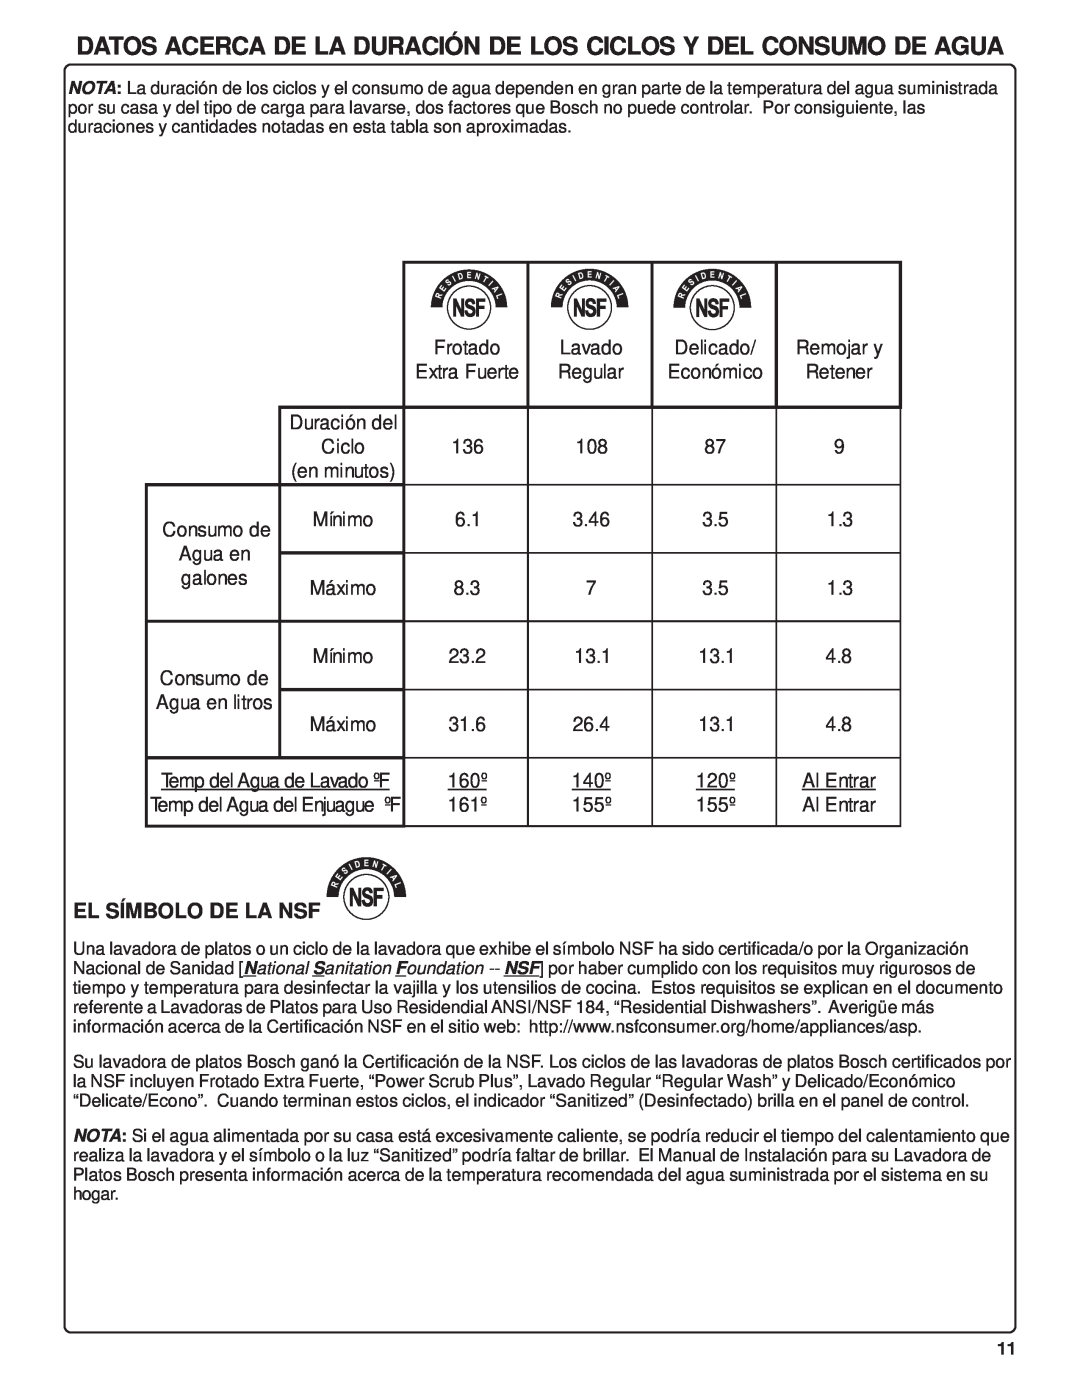 Bosch Appliances SHU42L manual Datos Acerca De La Duración De Los Ciclos Y Del Consumo De Agua, El Símbolo De La Nsf 